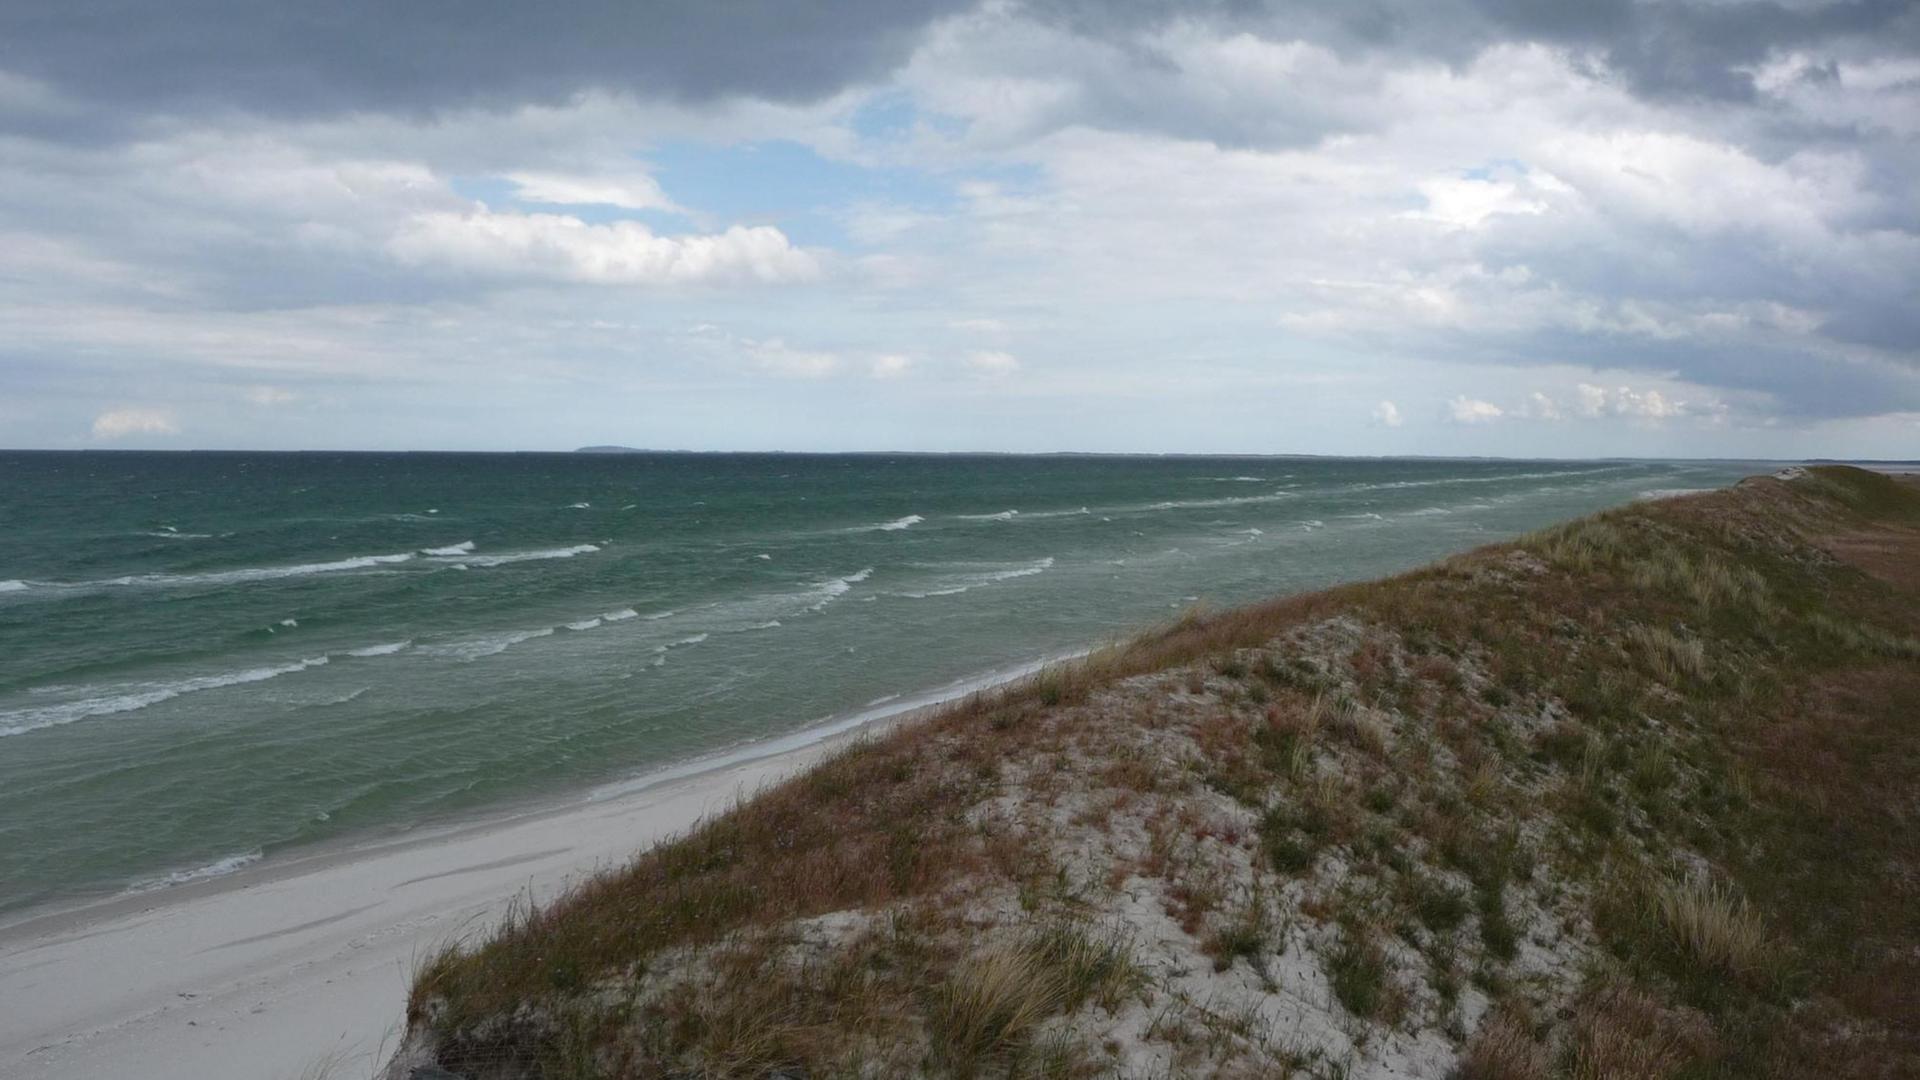 Dünen, Strand und dunkle Wolken über der Ostsee, aufgenommen bei Windstaerke vier an der Hohen Düne am östlichen Ende der Ostsee-Halbinsel Fischland-Darss-Zingst in Mecklenburg-Vorpommern am 08.07.2015.